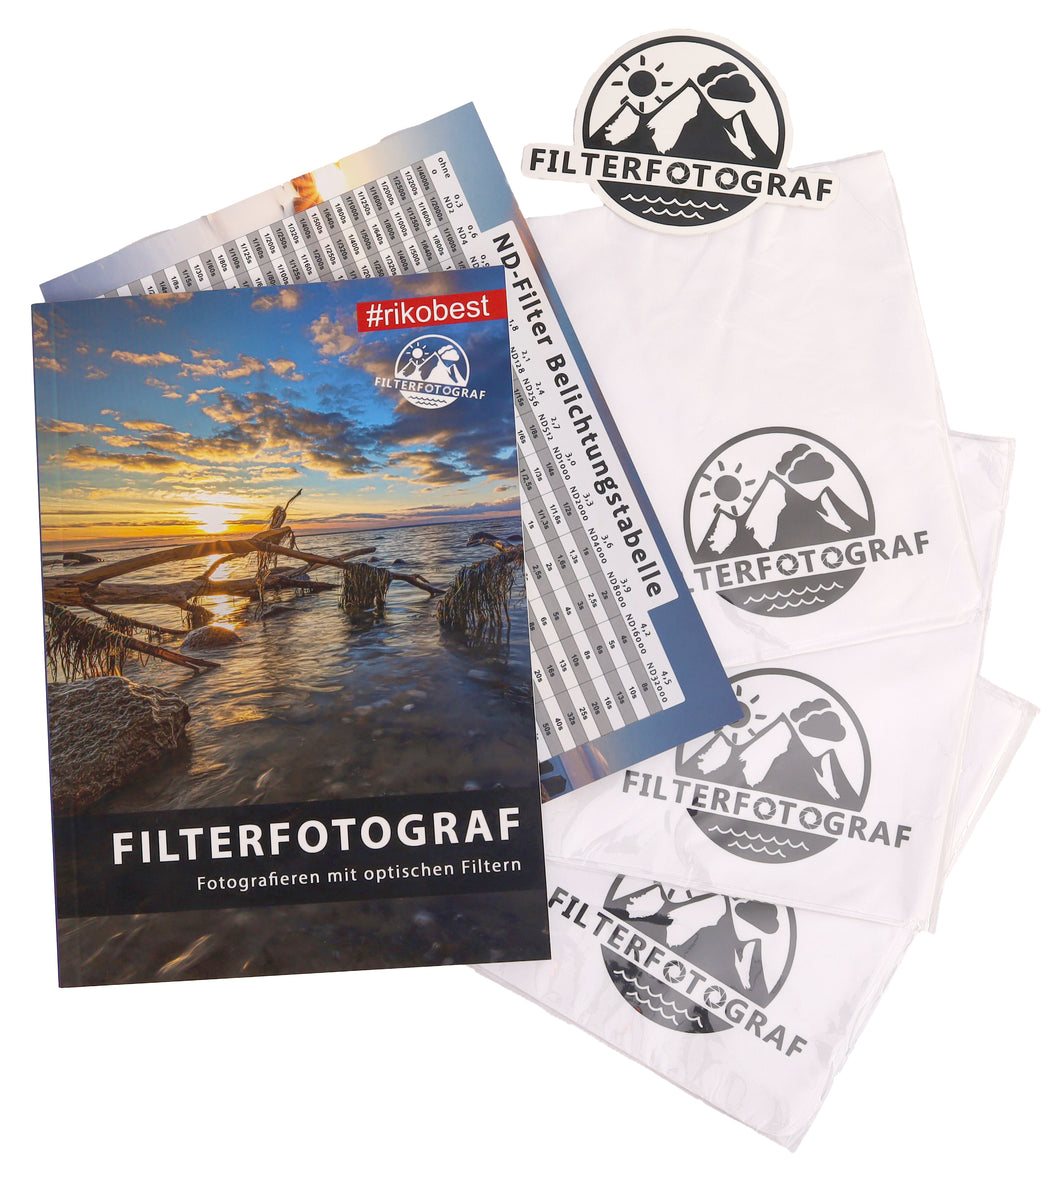 Filterfotograf – fotografieren mit optischen Filtern - Bundle Edition